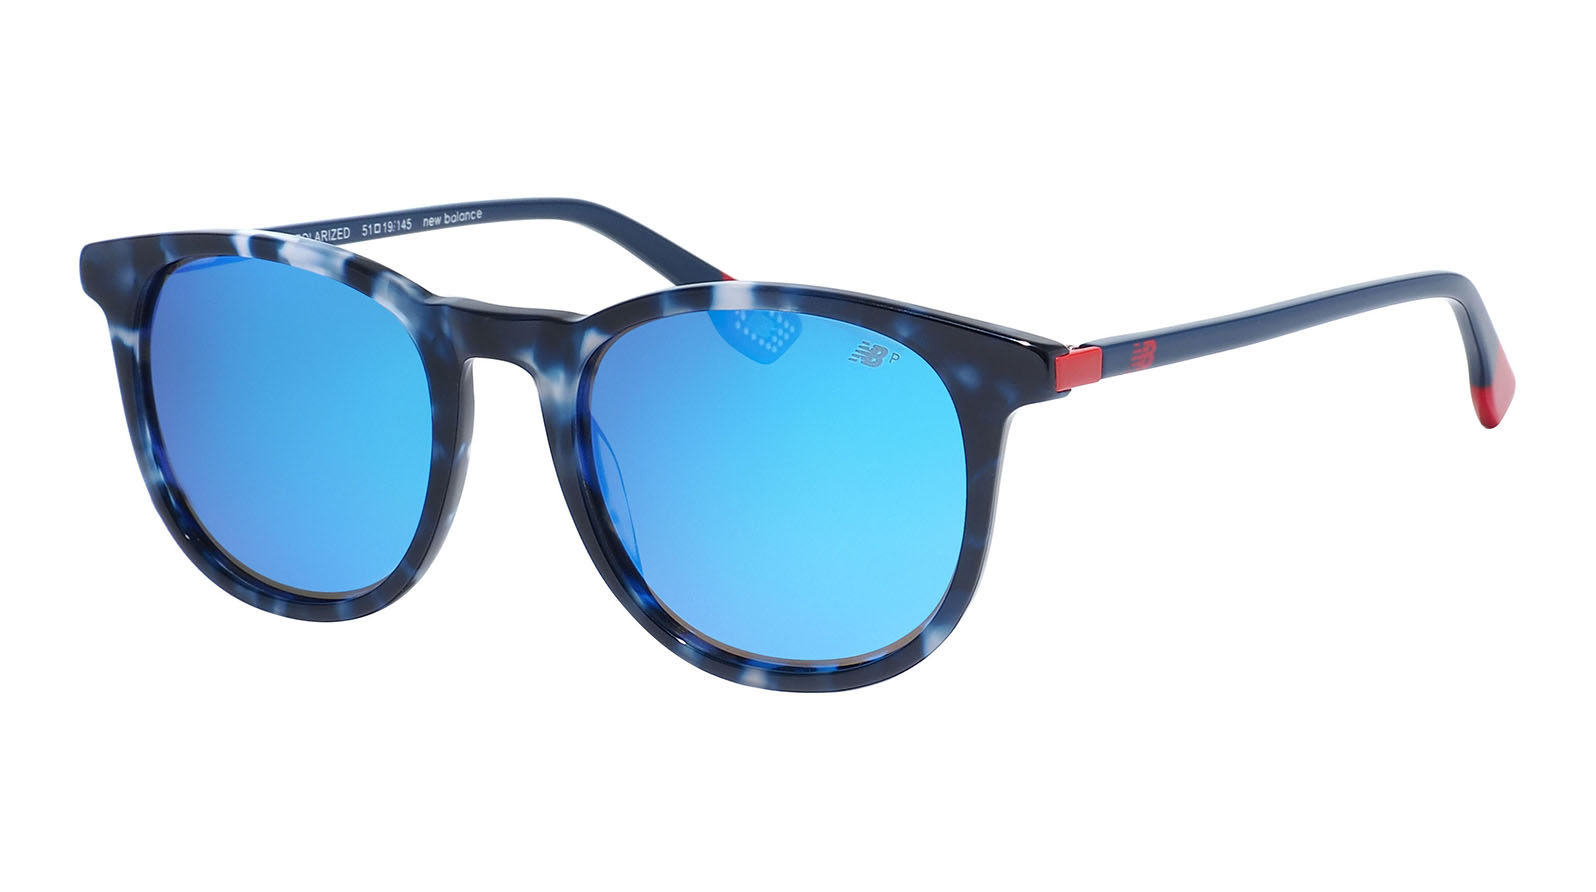 New Balance 6070 1 playtoday солнцезащитные очки с поляризацией для мальчика surf